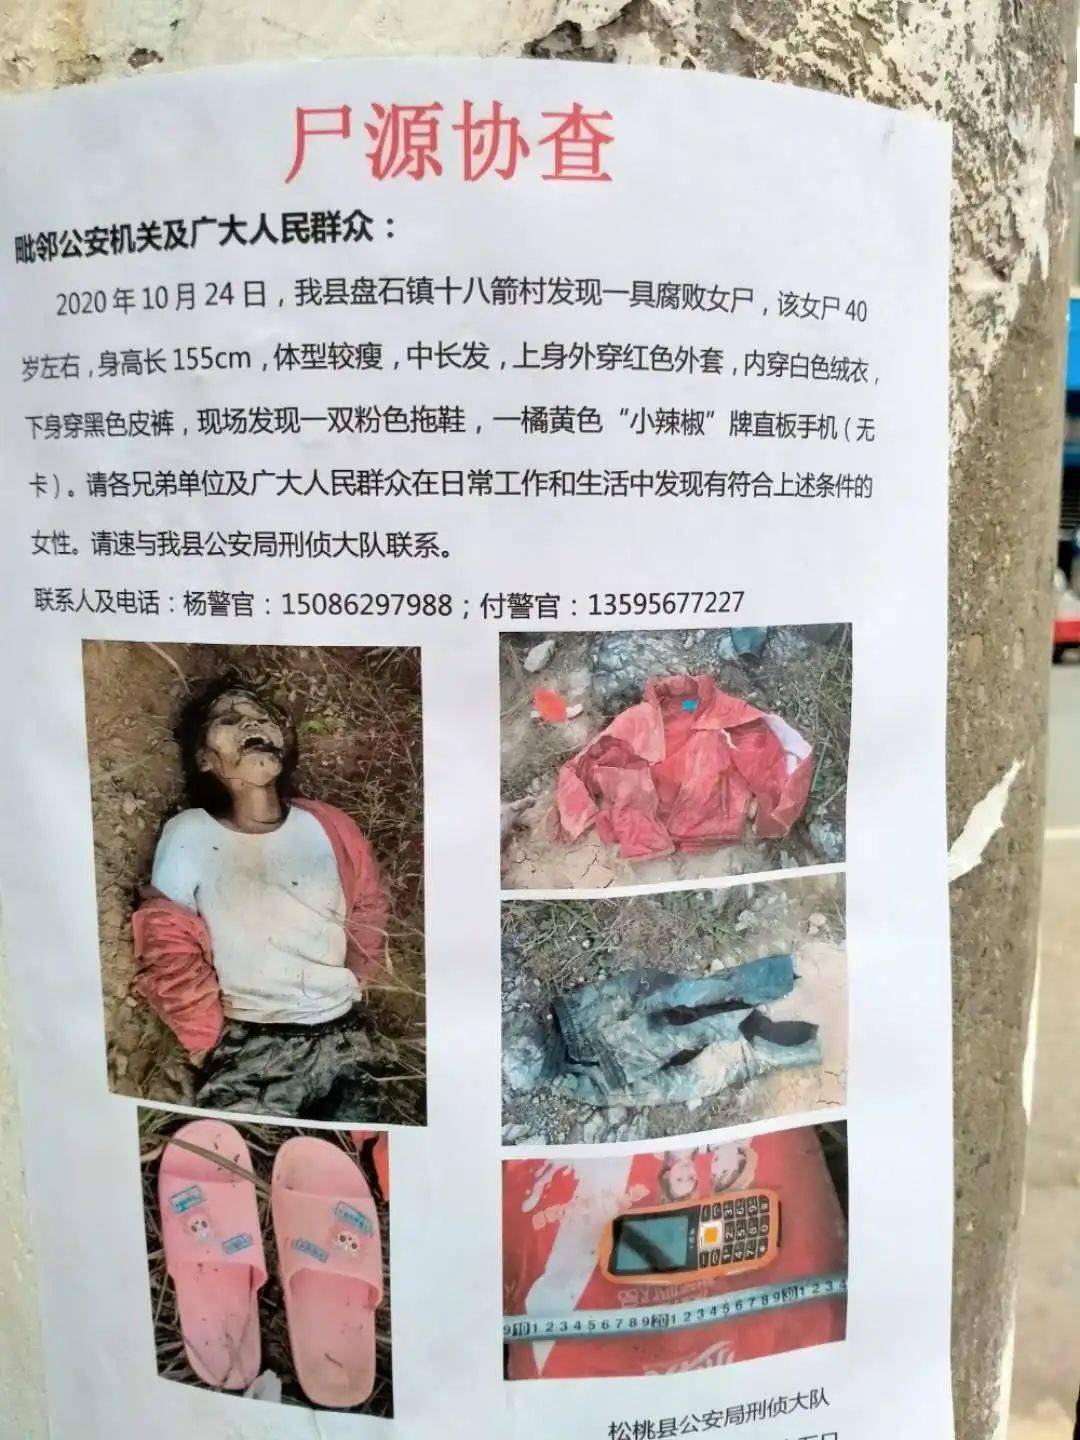 2020年10月24日,我县盘石镇十八箭村发现一具腐败女尸,该女尸40岁